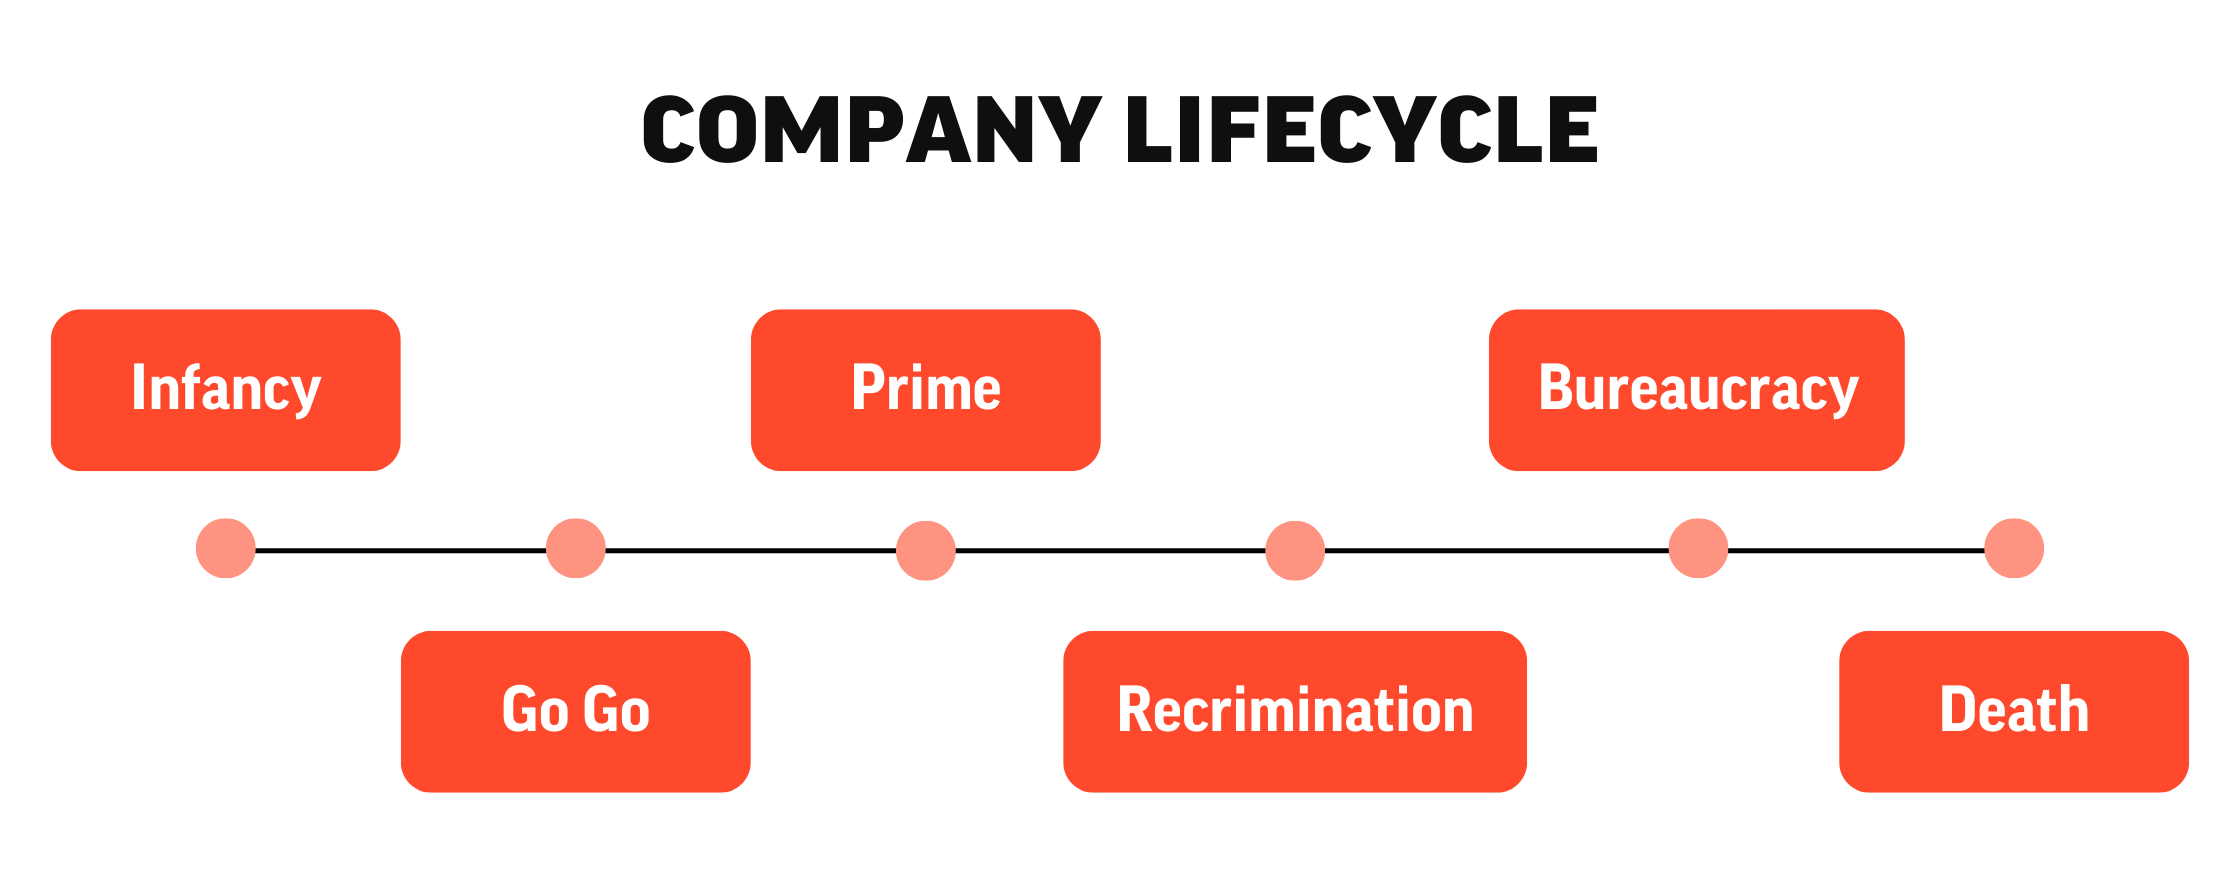 Companies Lifecycle